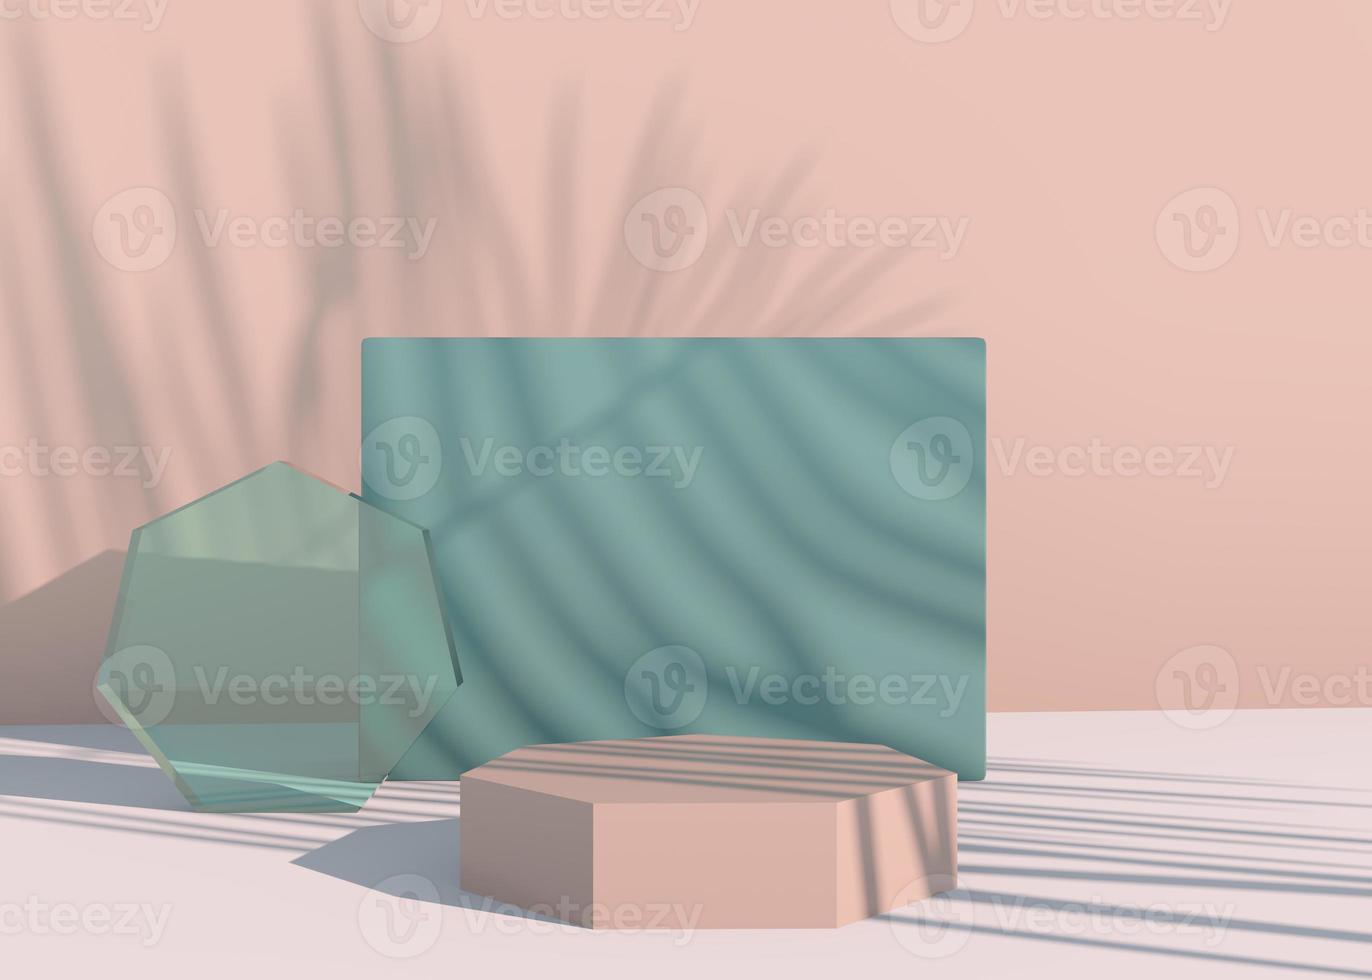 pódio com sombras de folhas de palmeira para apresentação de produtos cosméticos. vazio vitrine pedestal cenário simulado acima. 3d render foto